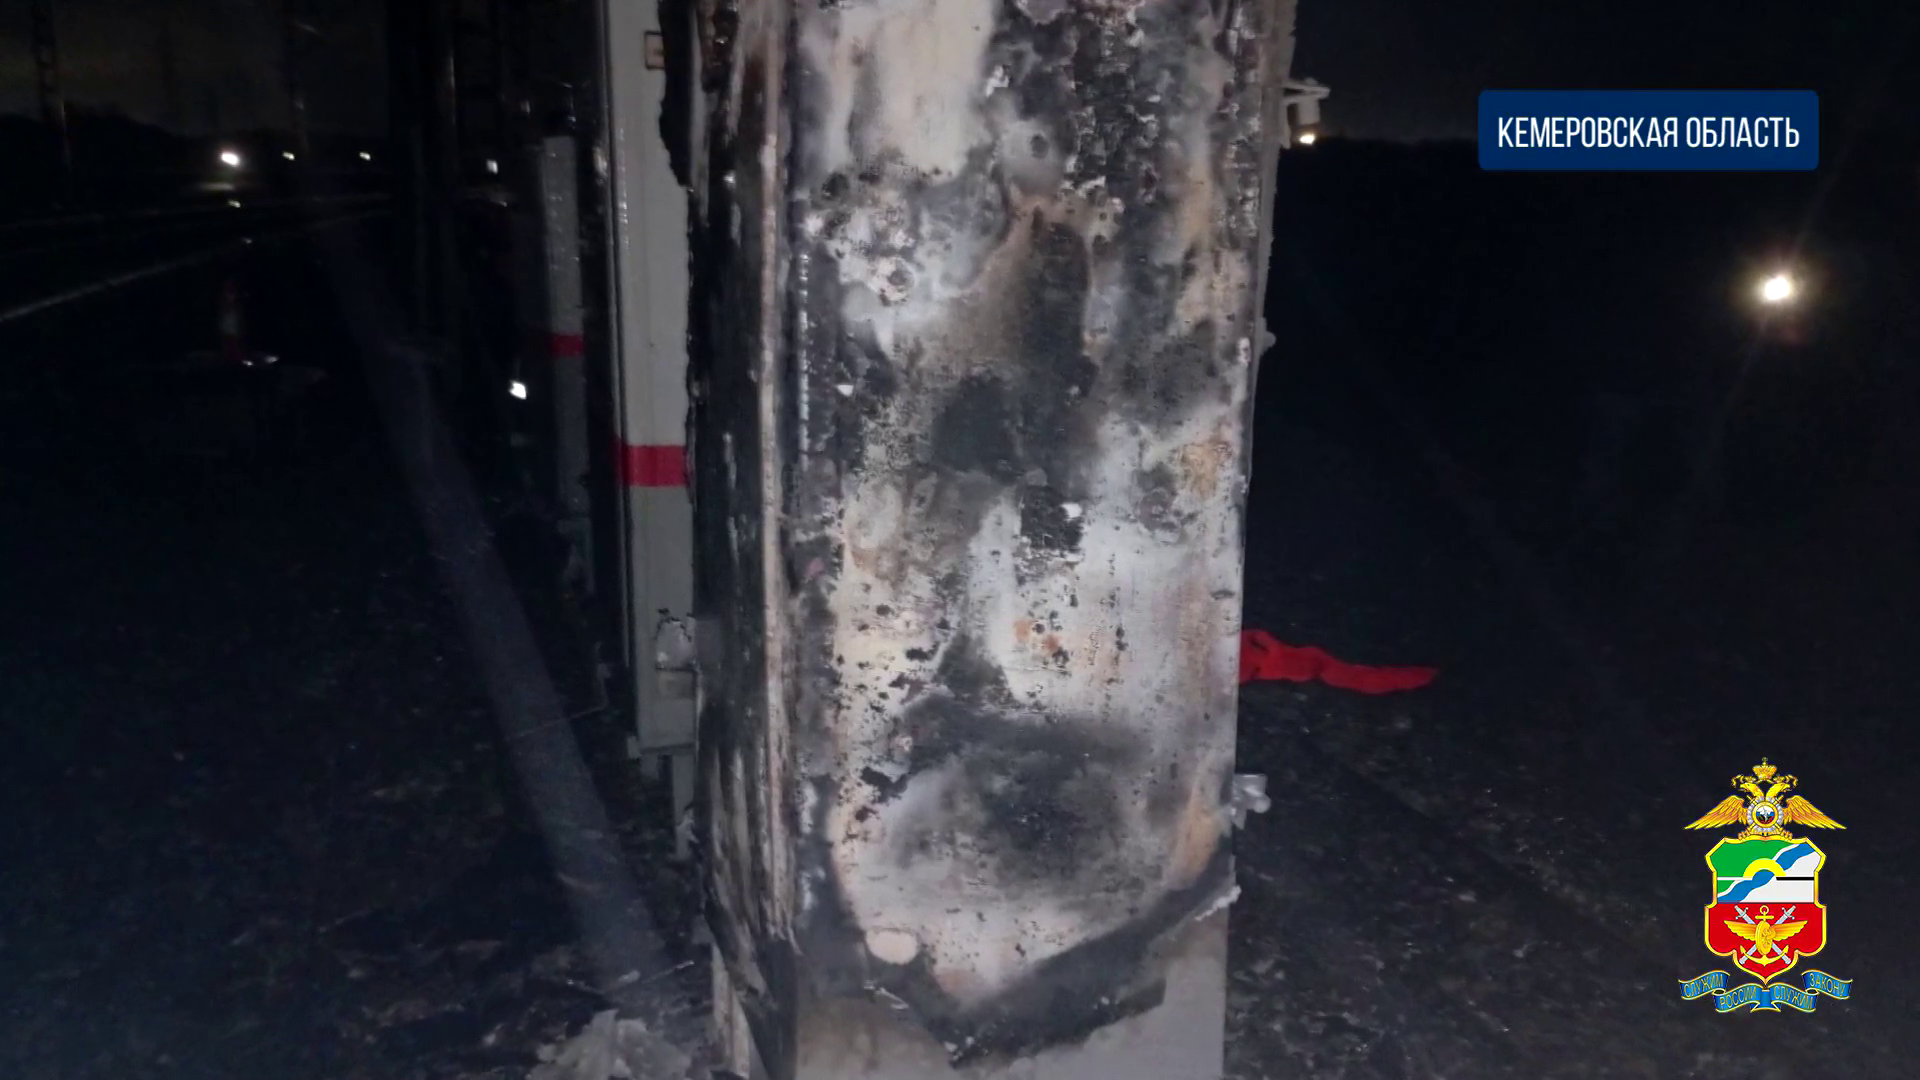 Три подростка задержаны правоохранителями за поджог релейного шкафа на железной дороге в Кузбассе